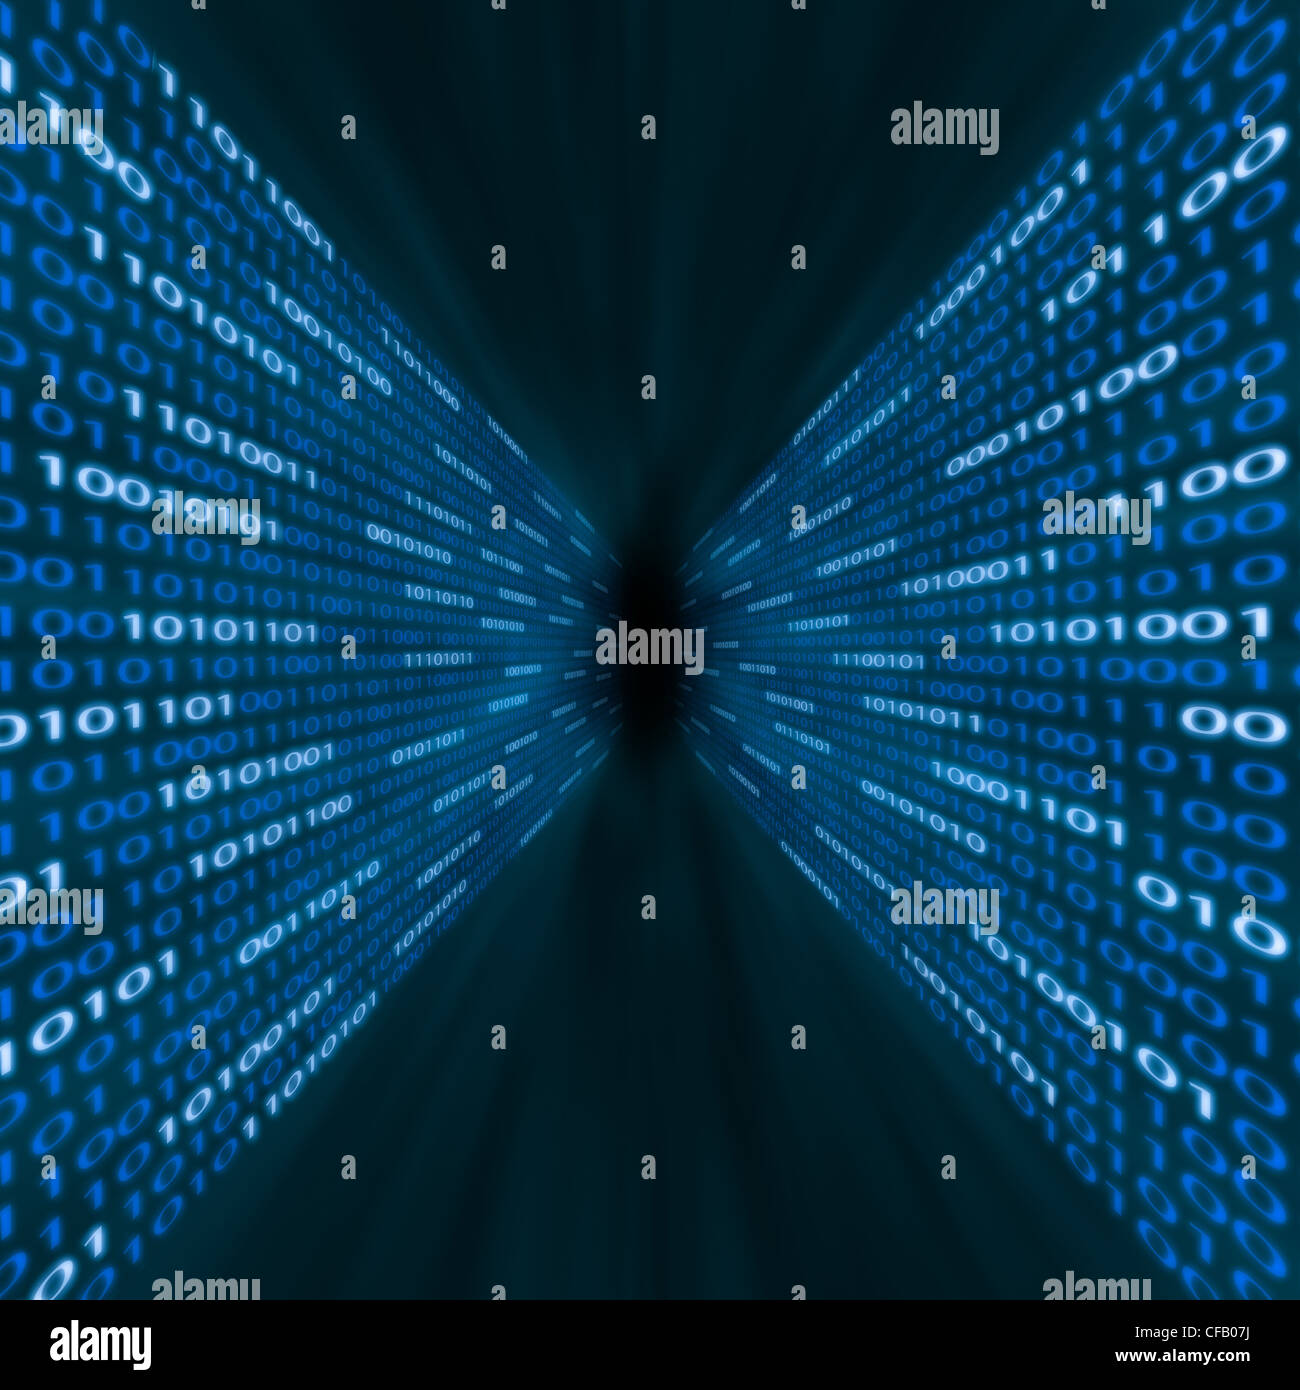 Corredor de código binario azul fluyendo en una vorágine Foto de stock